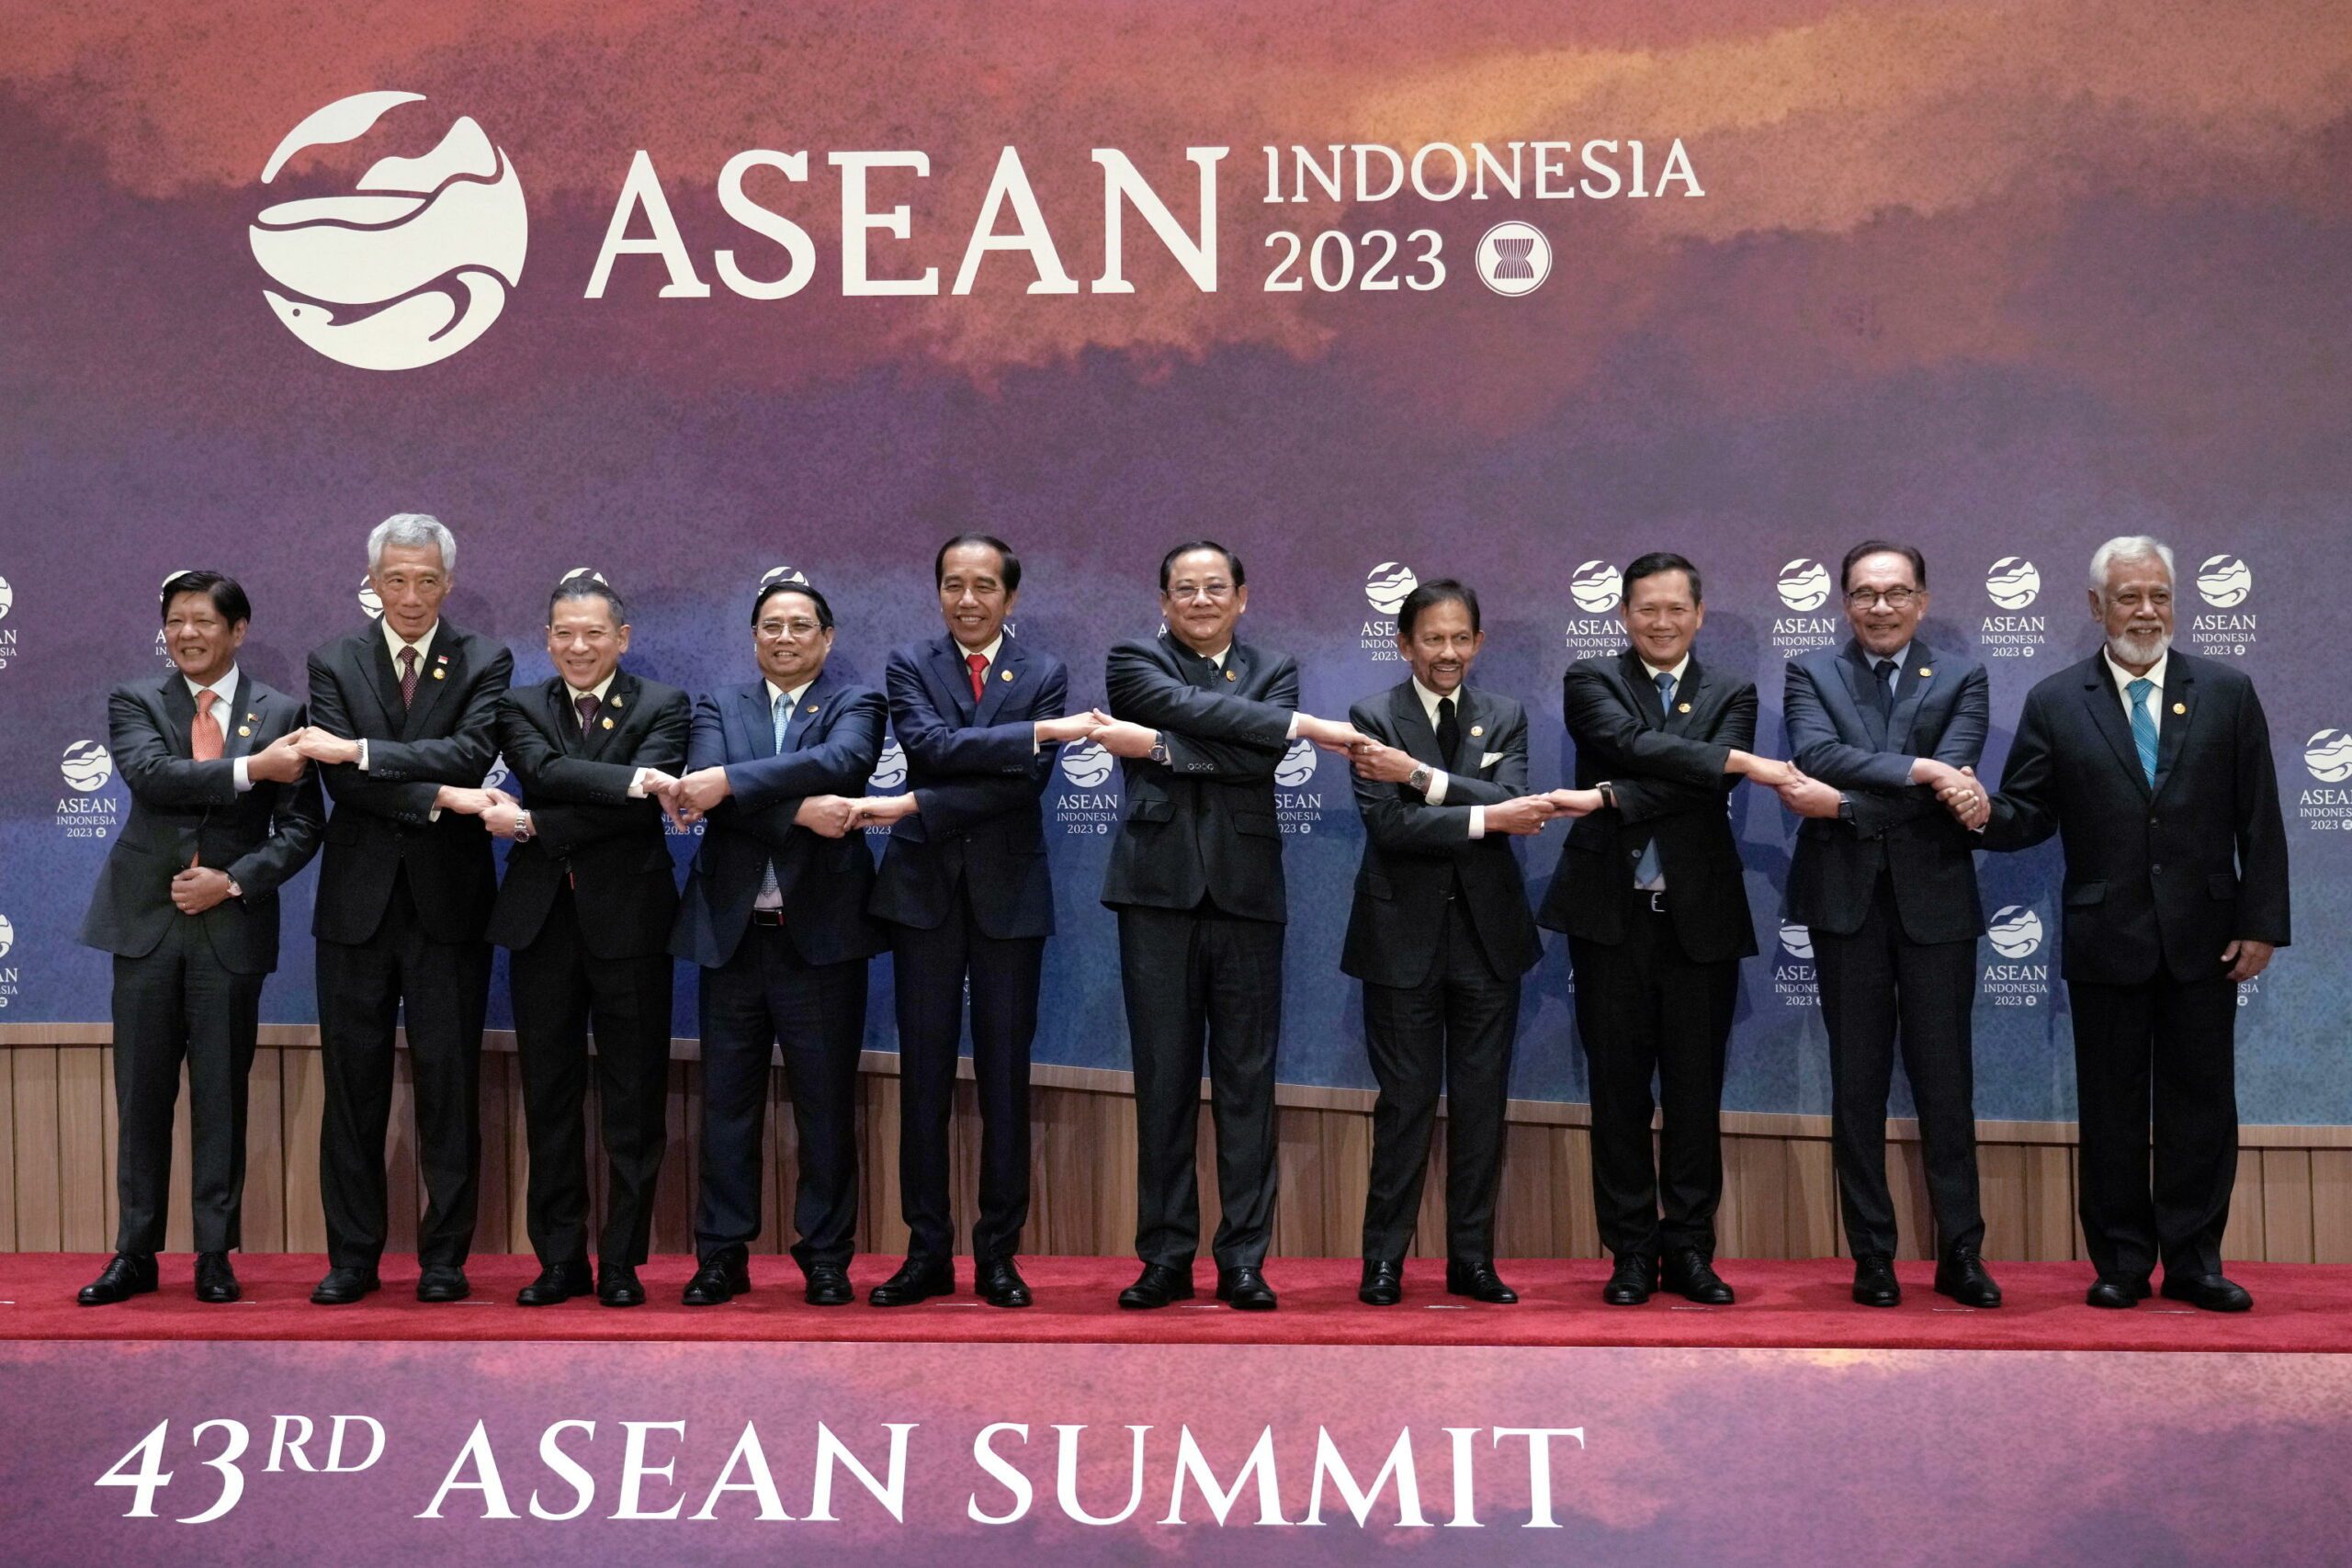 Concluso il summit ASEAN: il Sud-est asiatico prova ad affermarsi come “epicentro della crescita”